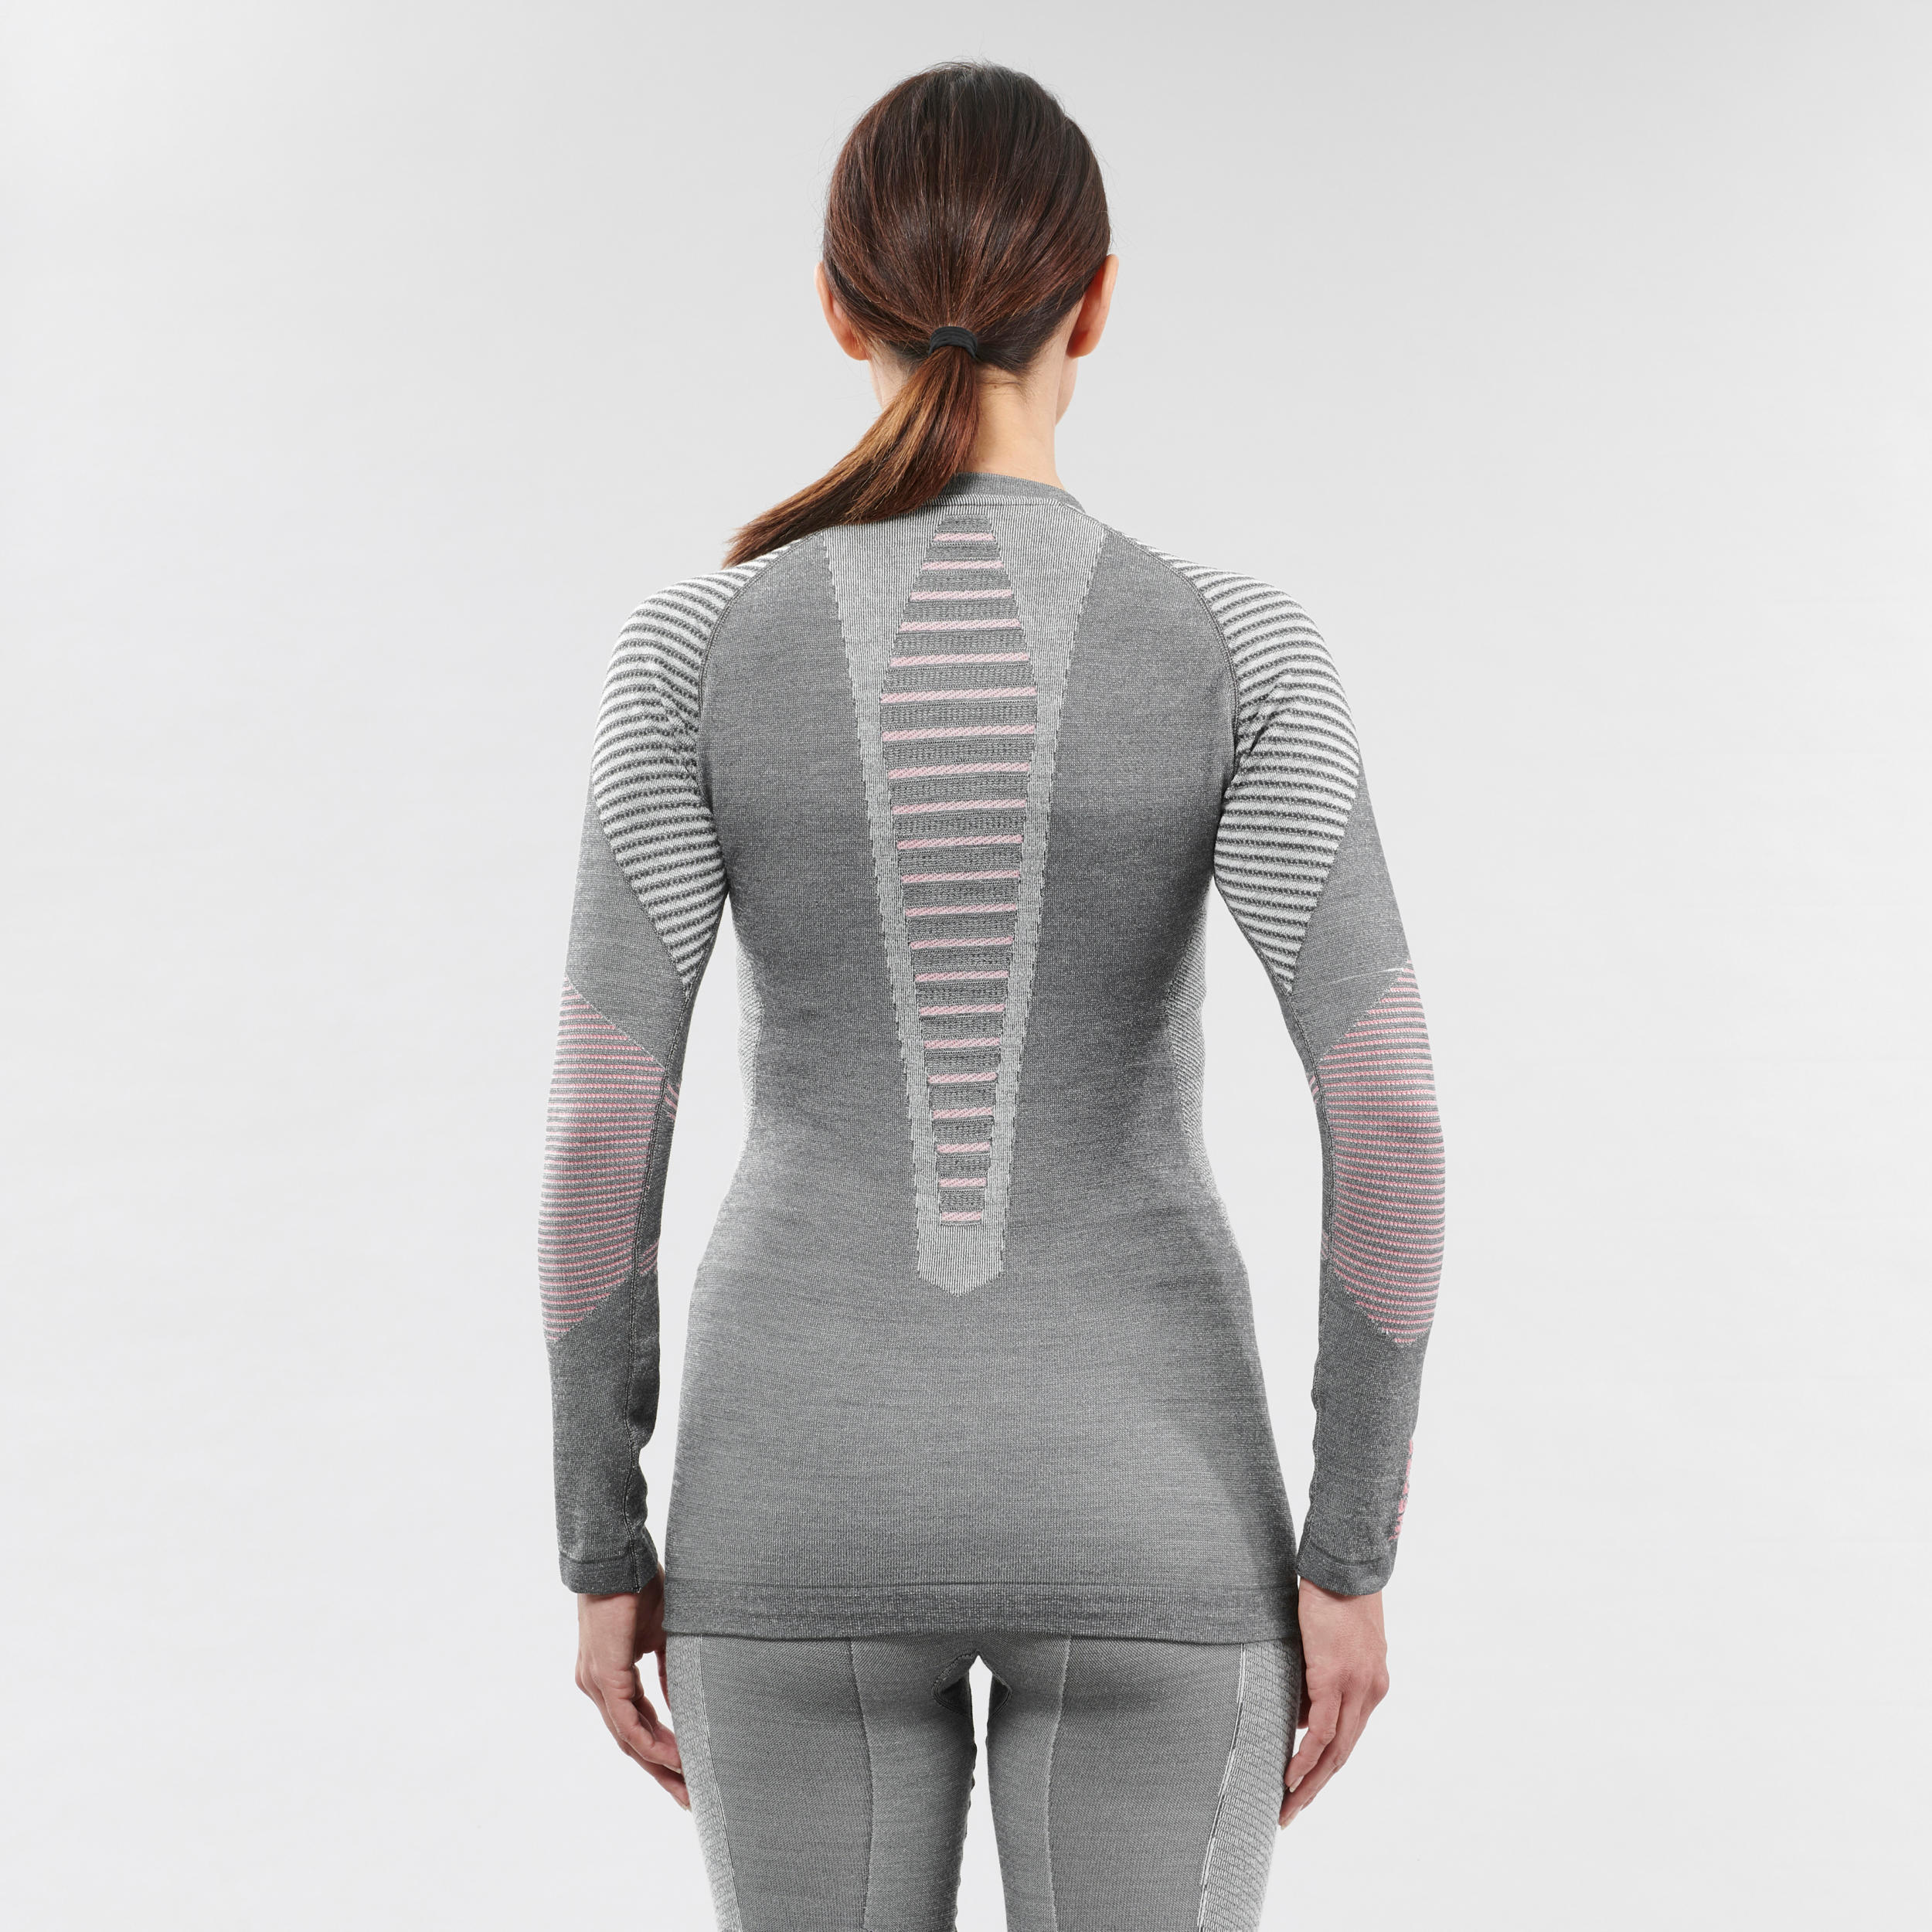 Women's 900 Merino wool seamless thermal base layer ski top - grey/pink 4/5